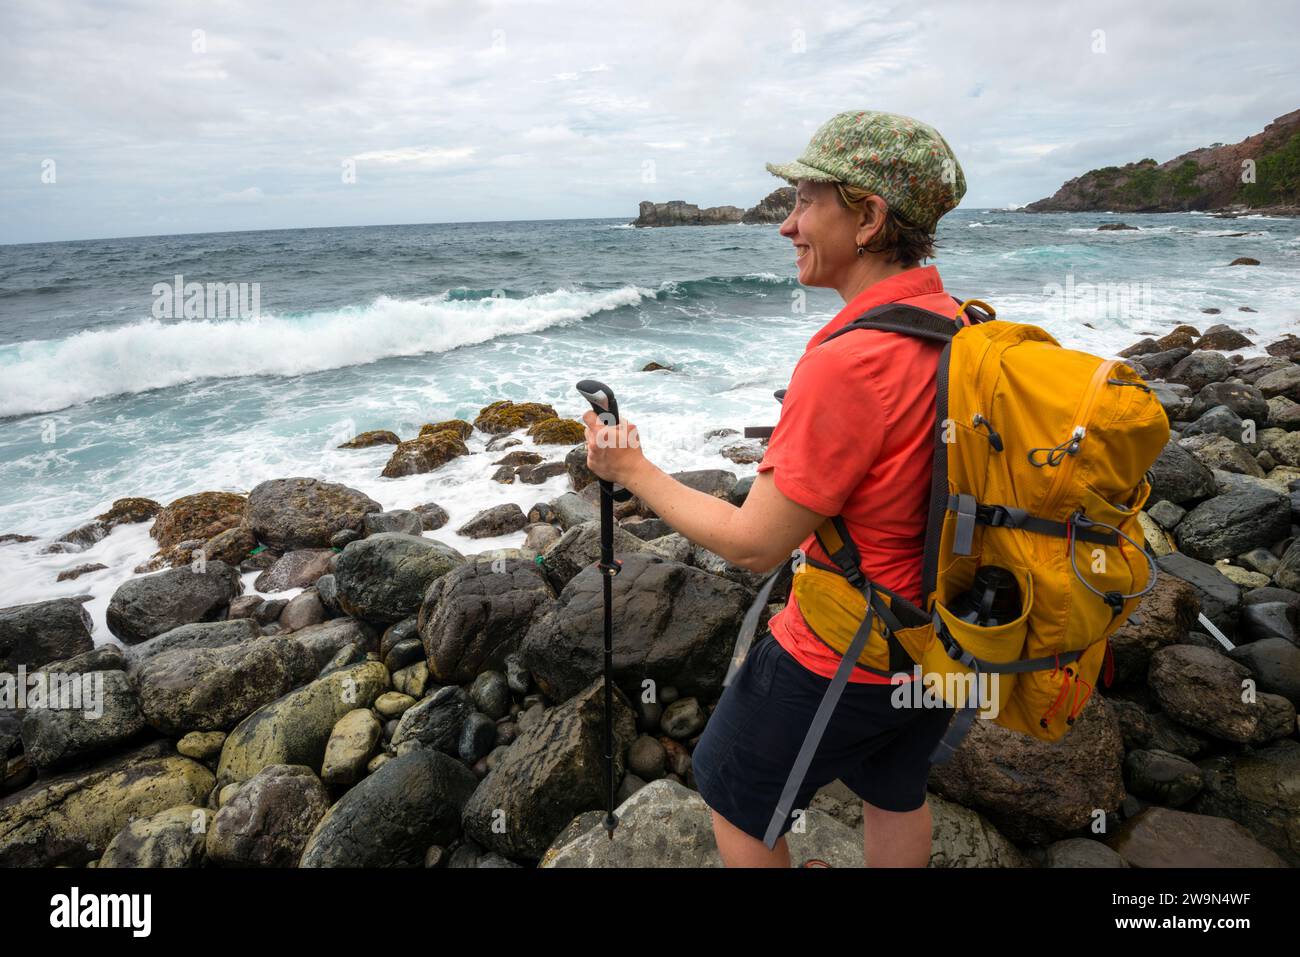 Un escursionista con zaino in spalla si affaccia sull'Oceano Atlantico mentre fa trekking nel segmento 6 del Waitukubuli National Trail sull'isola caraibica di Dominica. Foto Stock